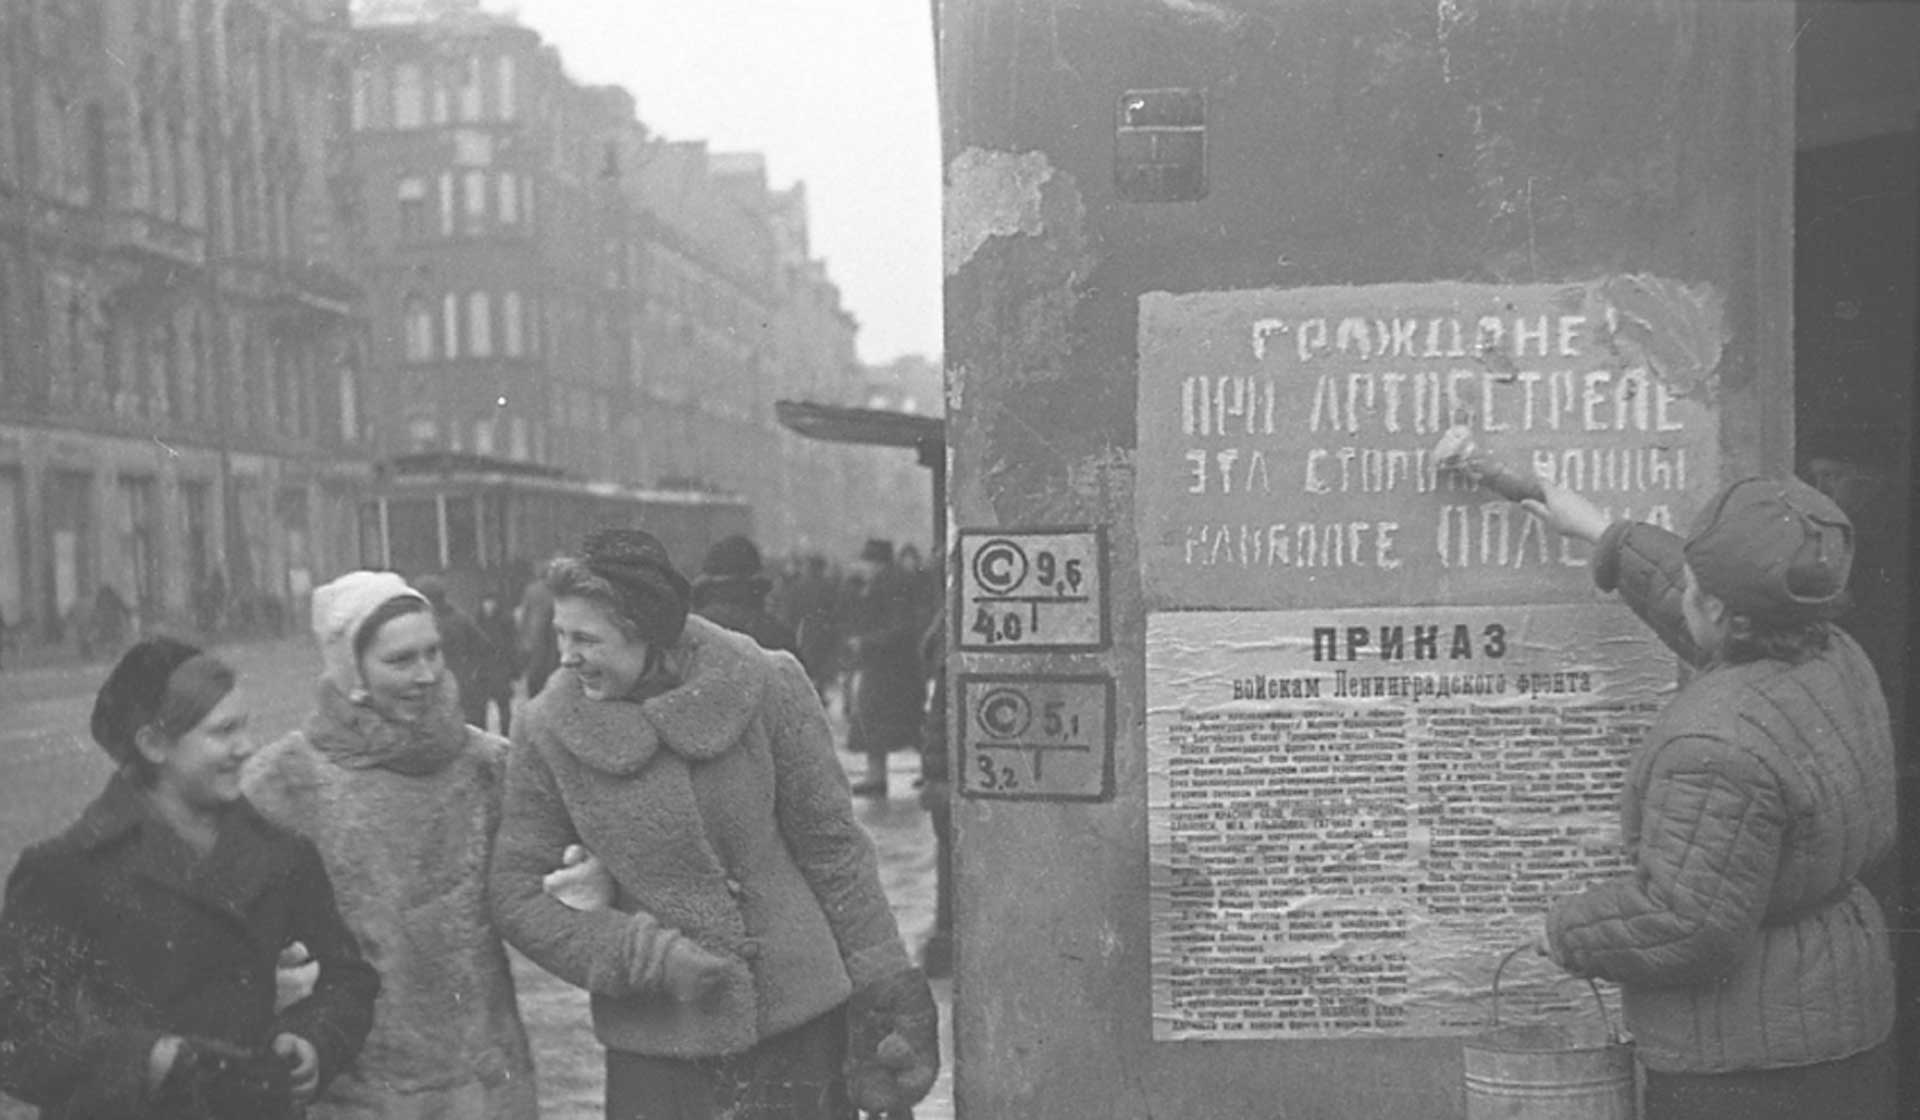  Блокада Ленинграда – одна из самых страшных страниц Великой Отечественной войны. 